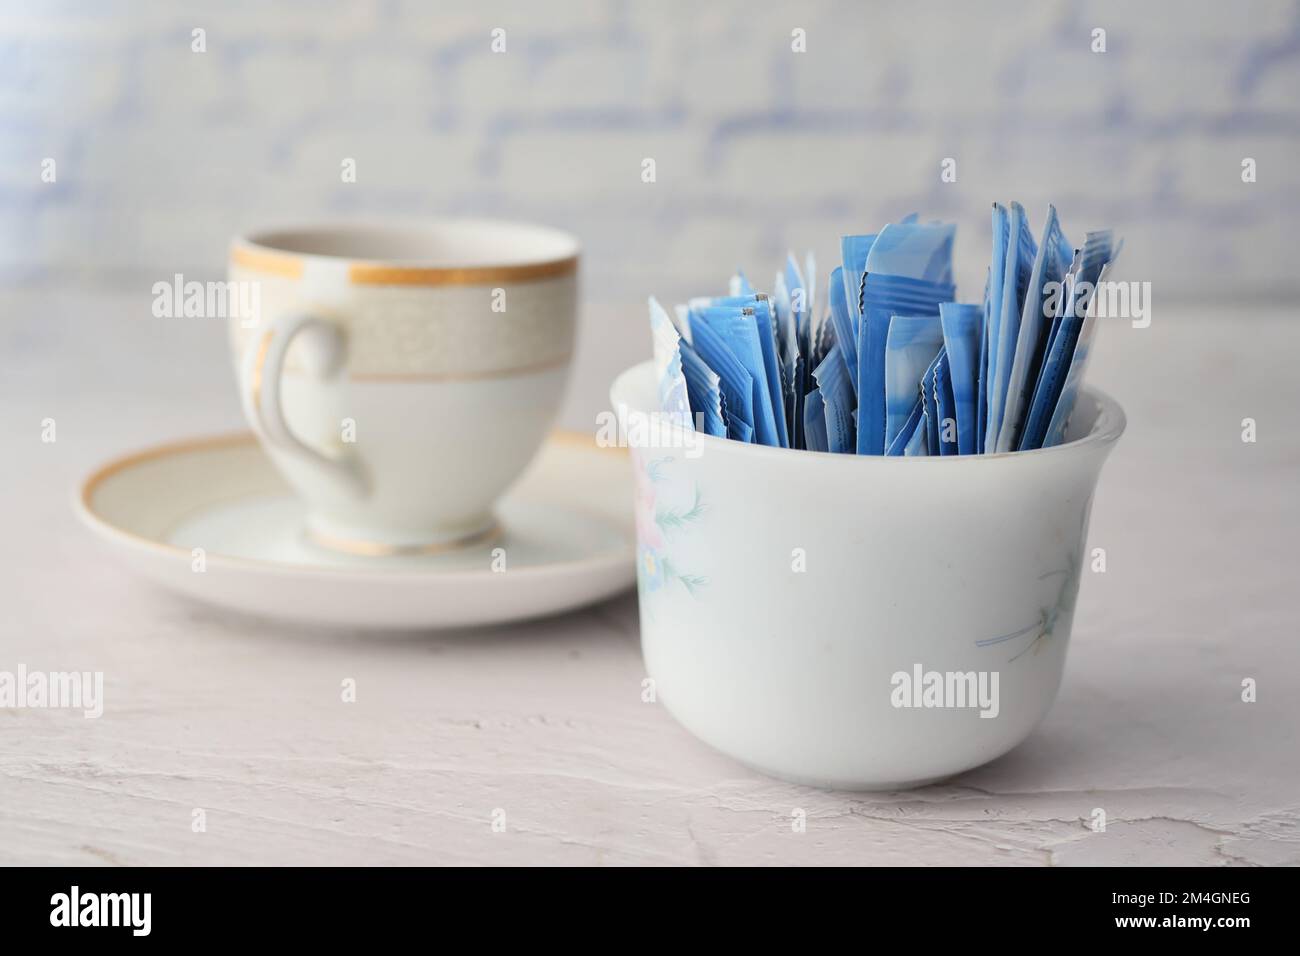 Dolcificante sostitutivo dello zucchero in una confezione e una tazza di tè sul tavolo Foto Stock